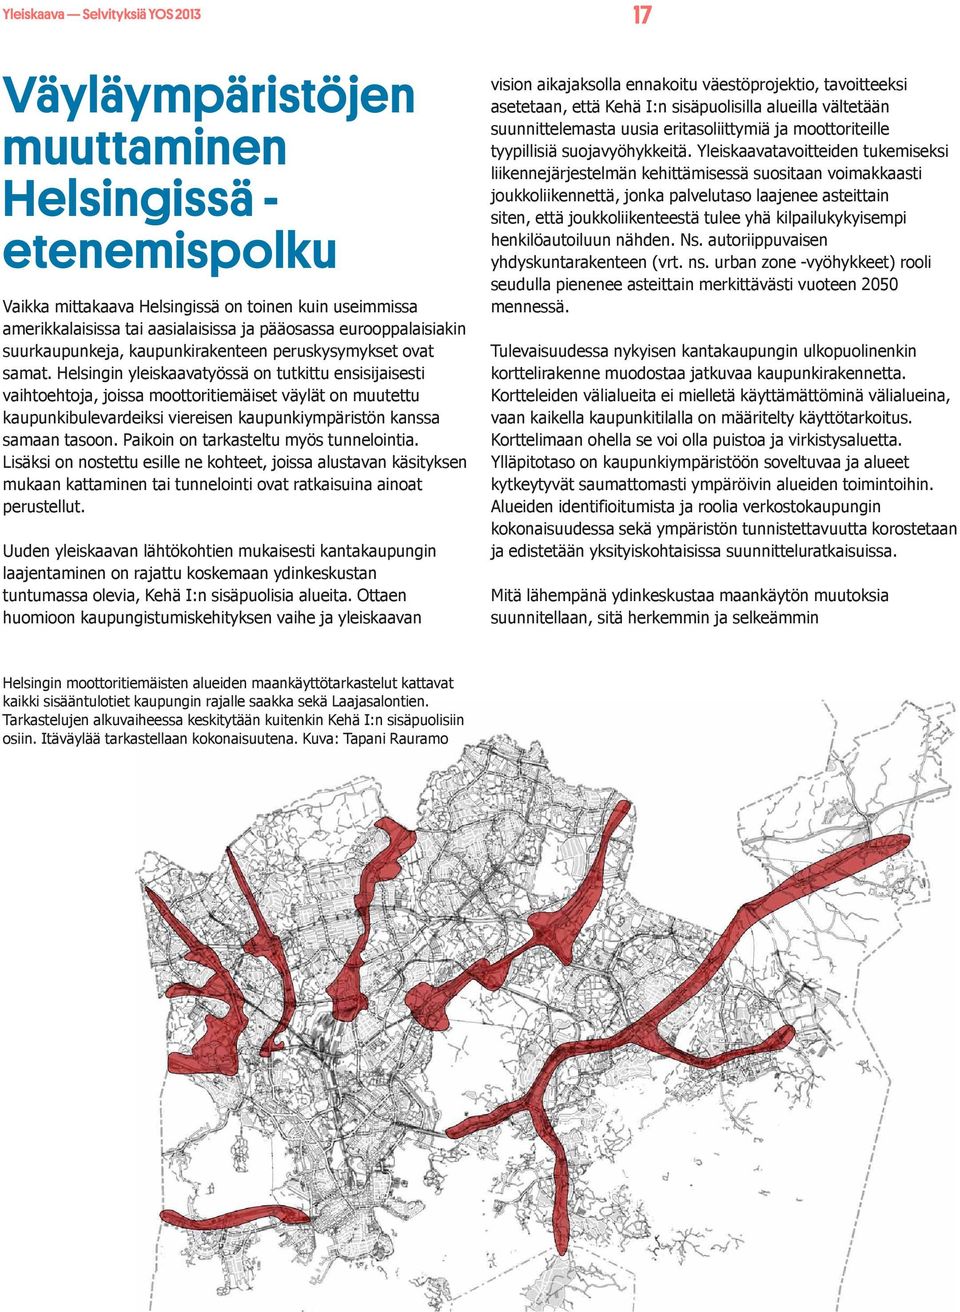 Helsingin yleiskaavatyössä on tutkittu ensisijaisesti vaihtoehtoja, joissa moottoritiemäiset väylät on muutettu kaupunkibulevardeiksi viereisen kaupunkiympäristön kanssa samaan tasoon.